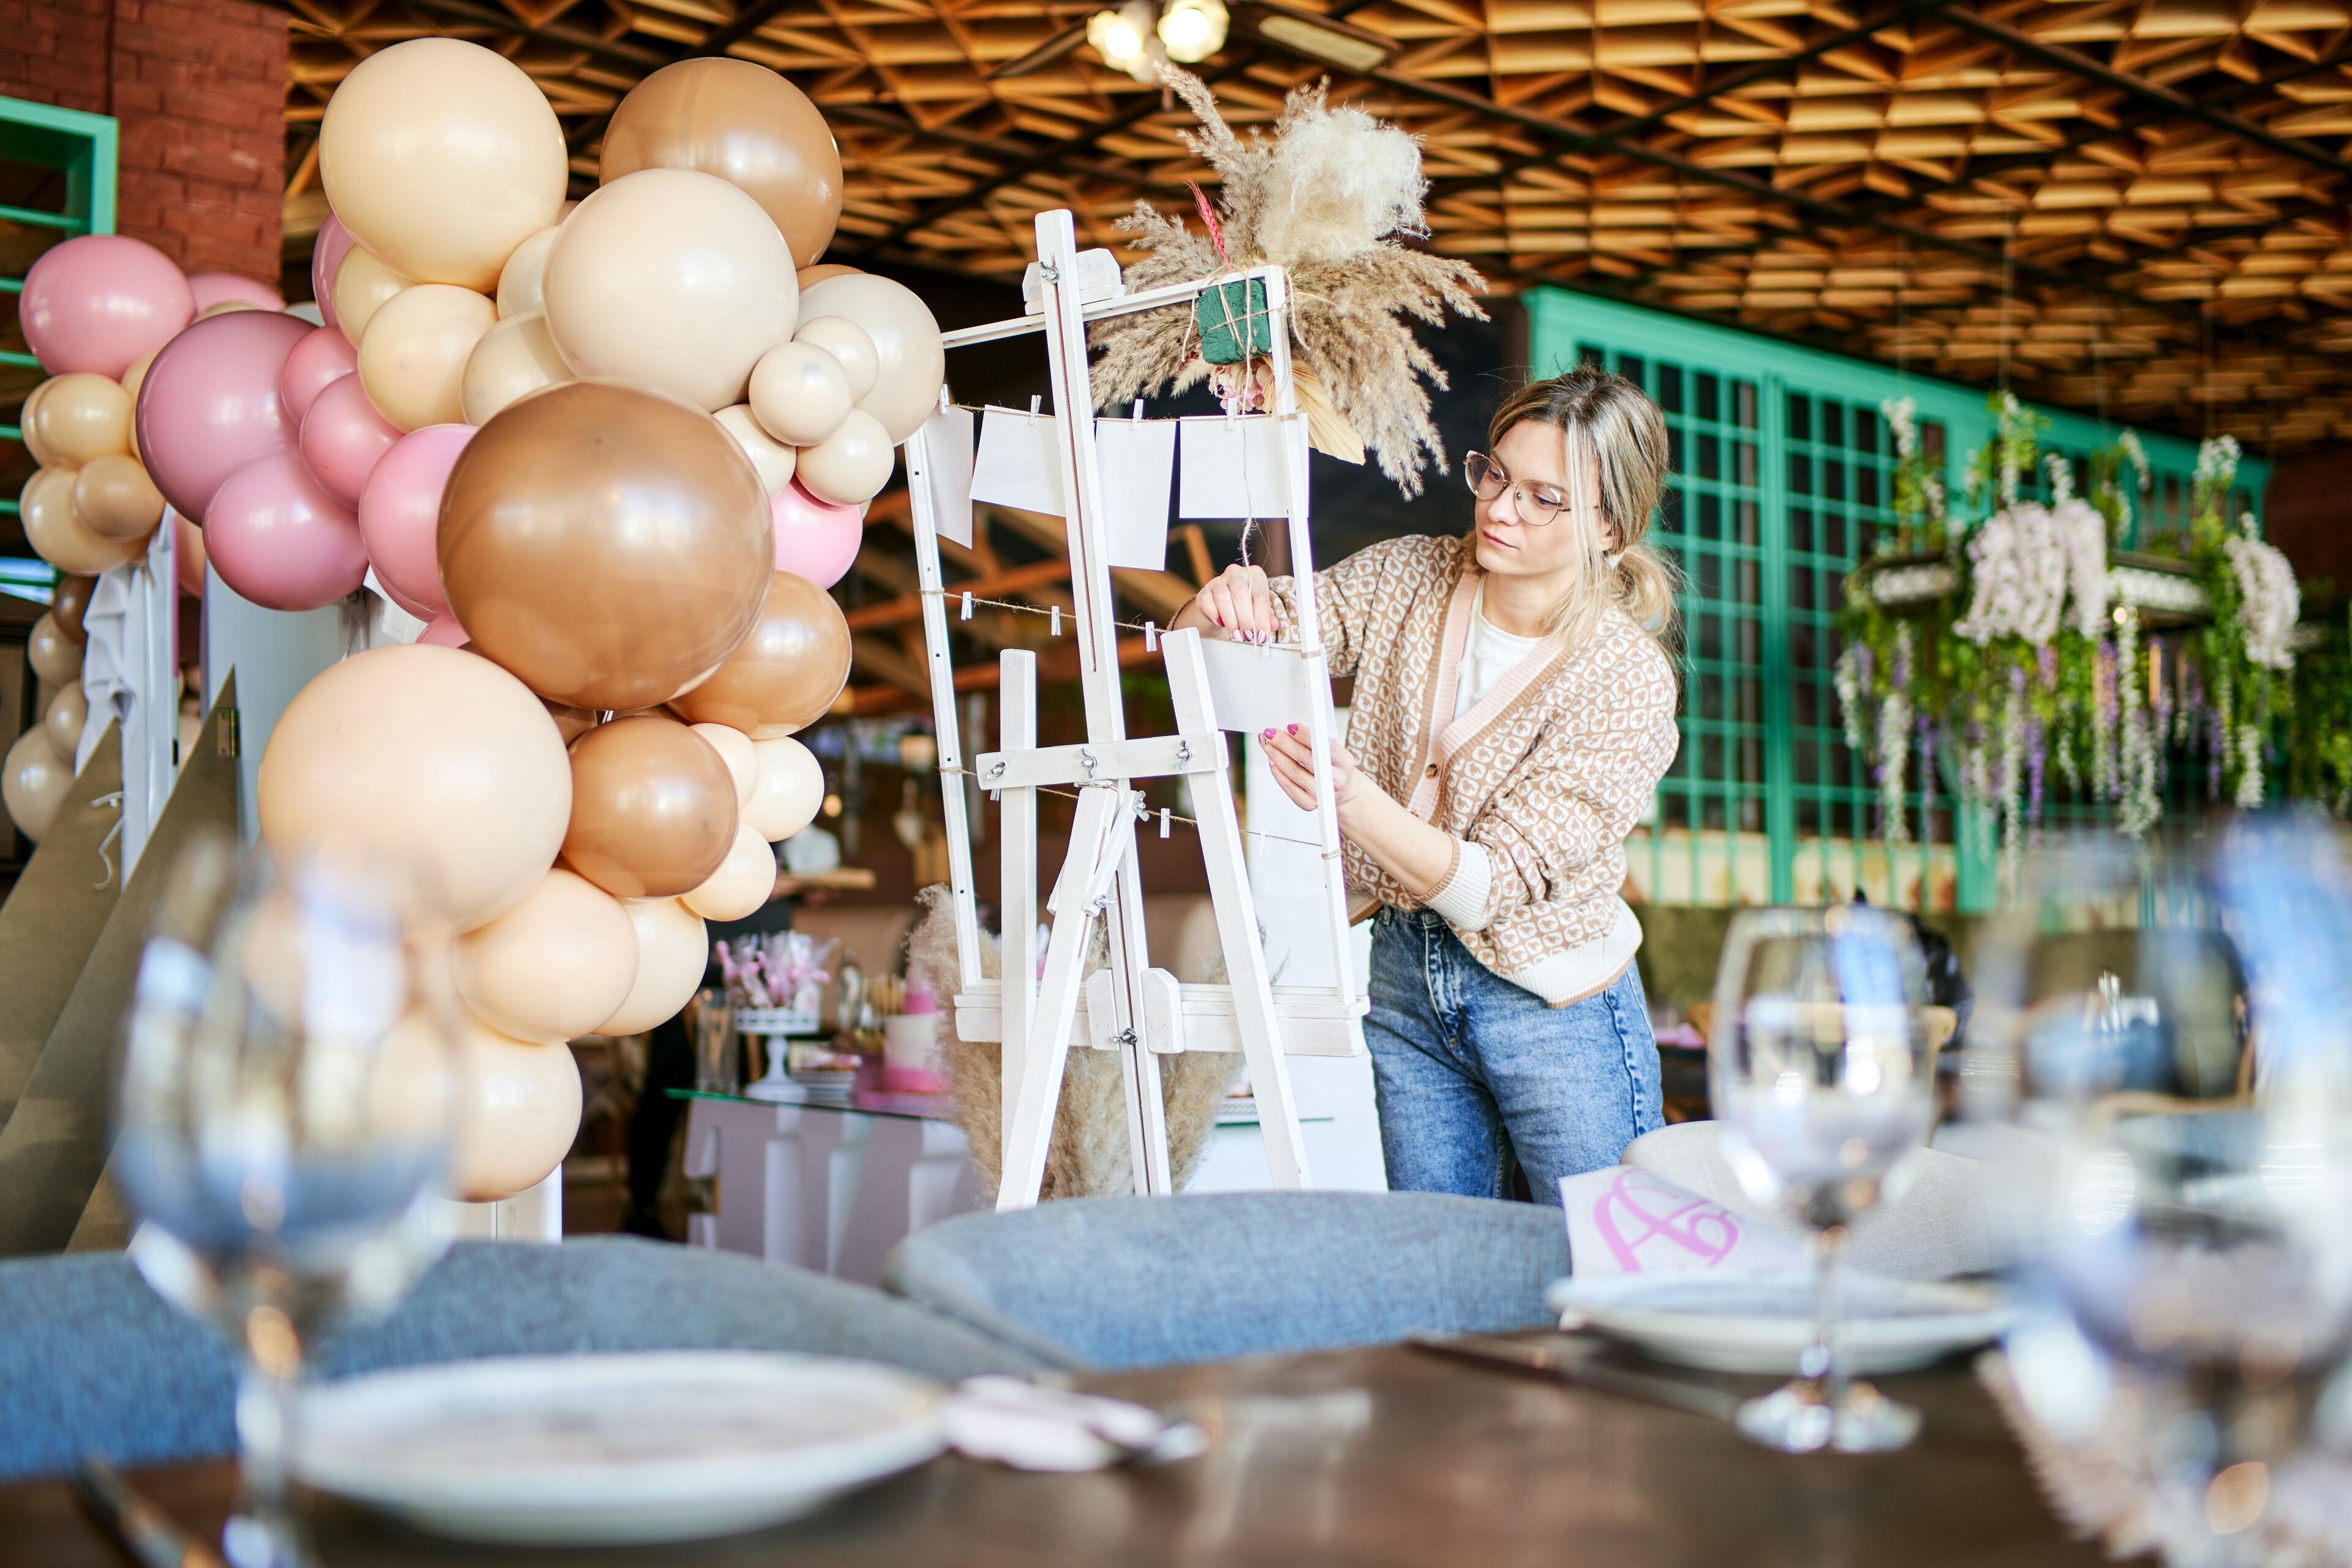 Une organisatrice d'événements concentrée ajuste les décorations sur un chevalet blanc dans un cadre festif avec des ballons et des tables élégamment dressées.